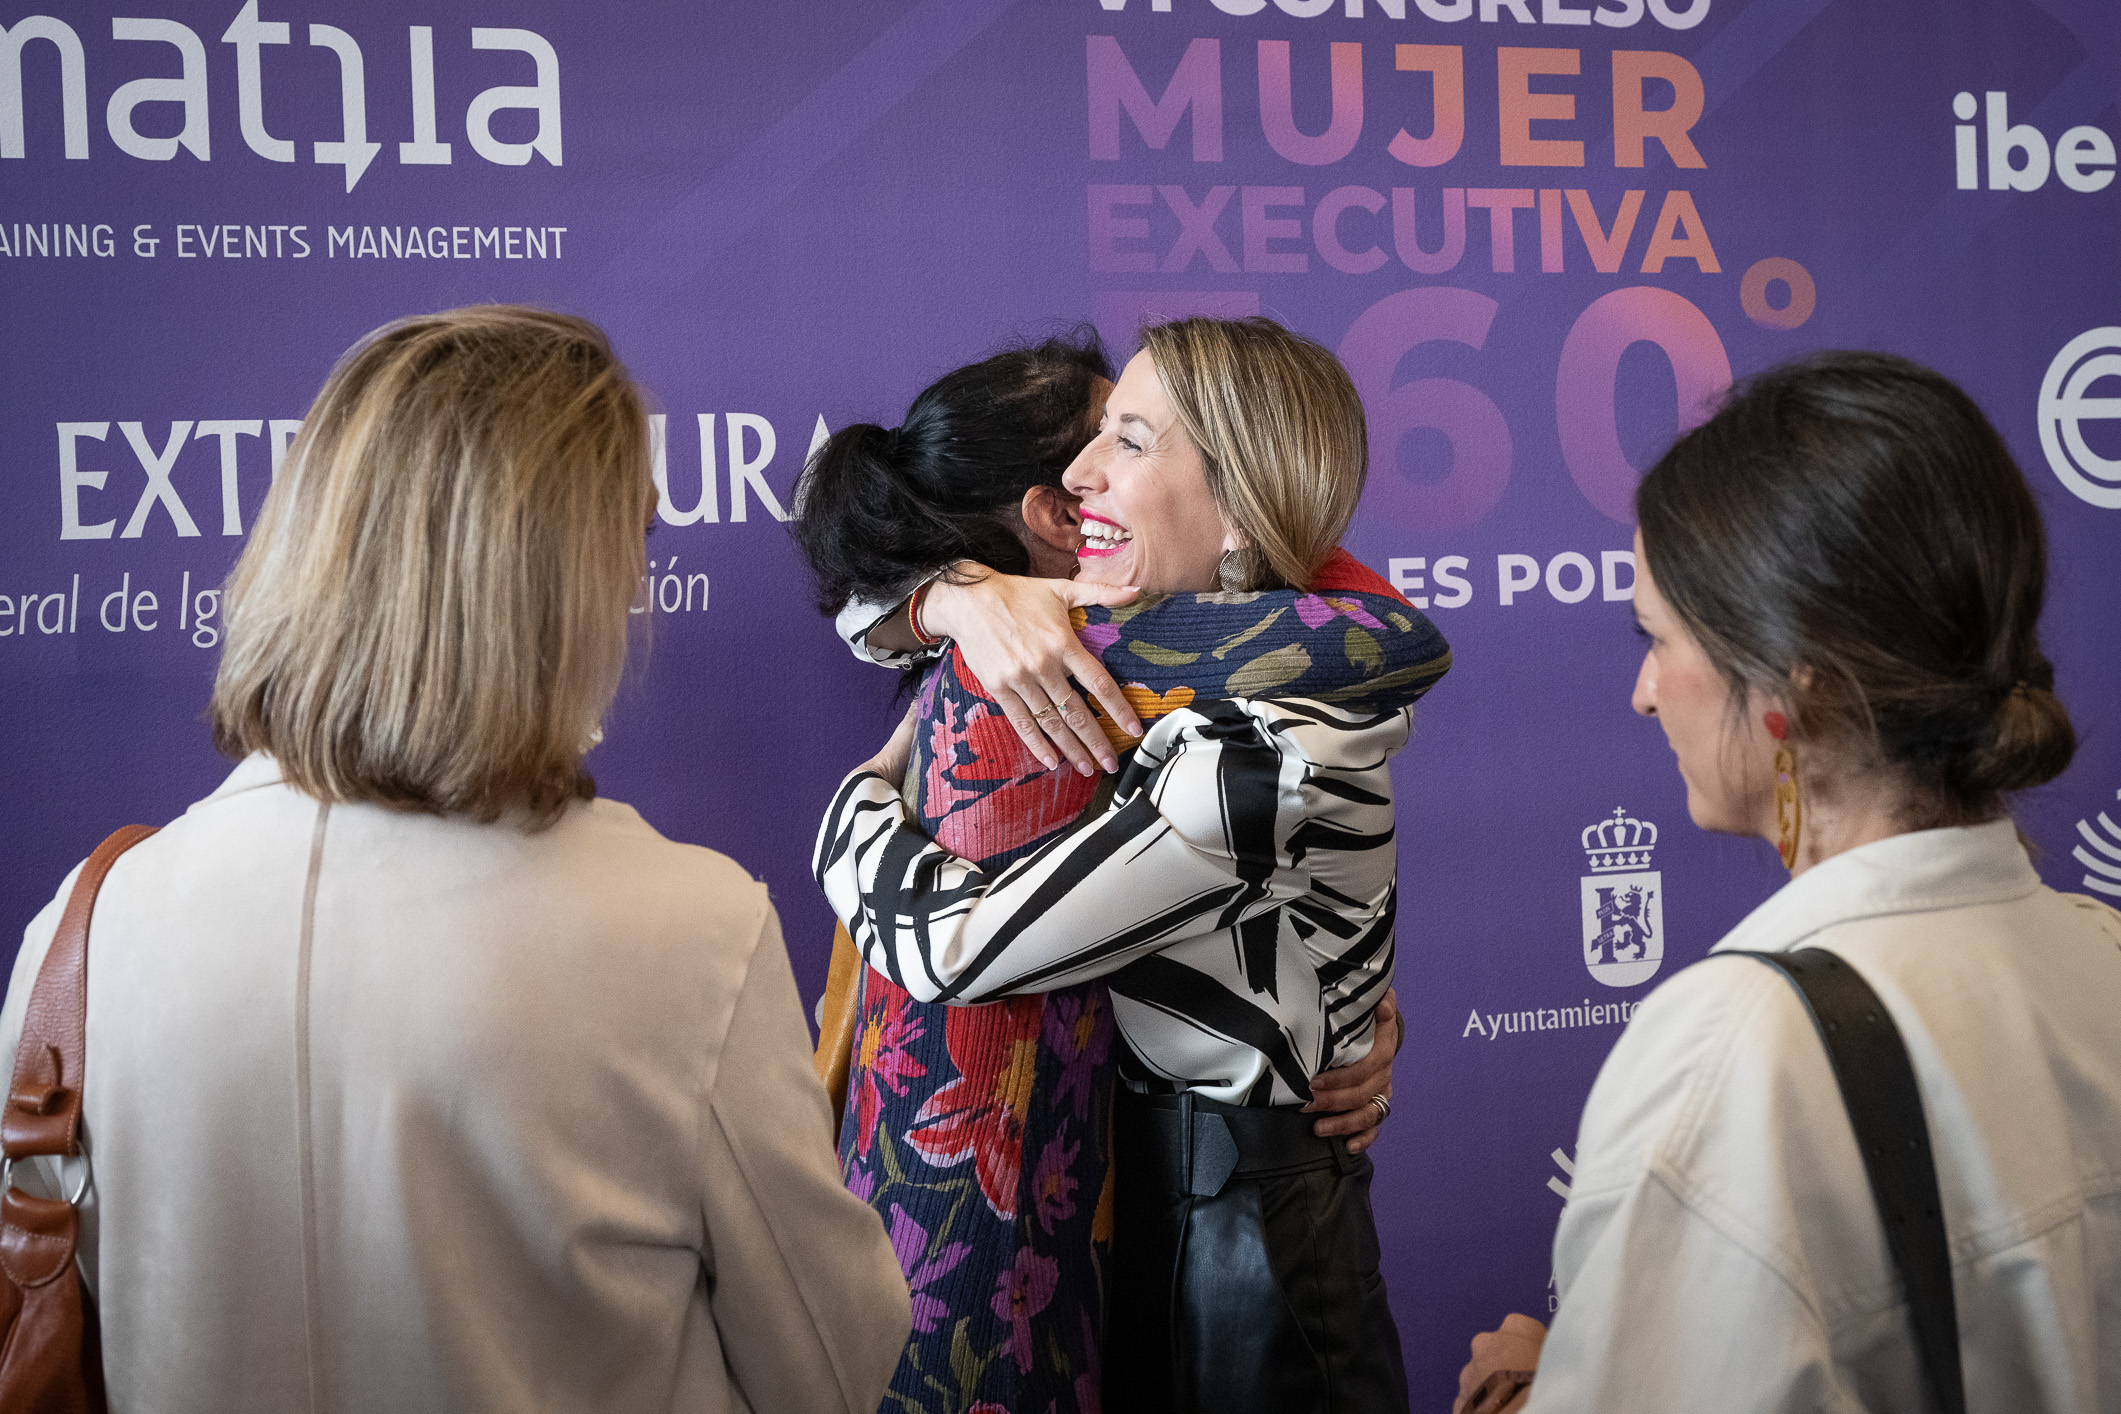 Image 5 of article Guardiola defiende la libertad de las mujeres en cada ciudad, en cada pueblo y en cada rincón de Extremadura